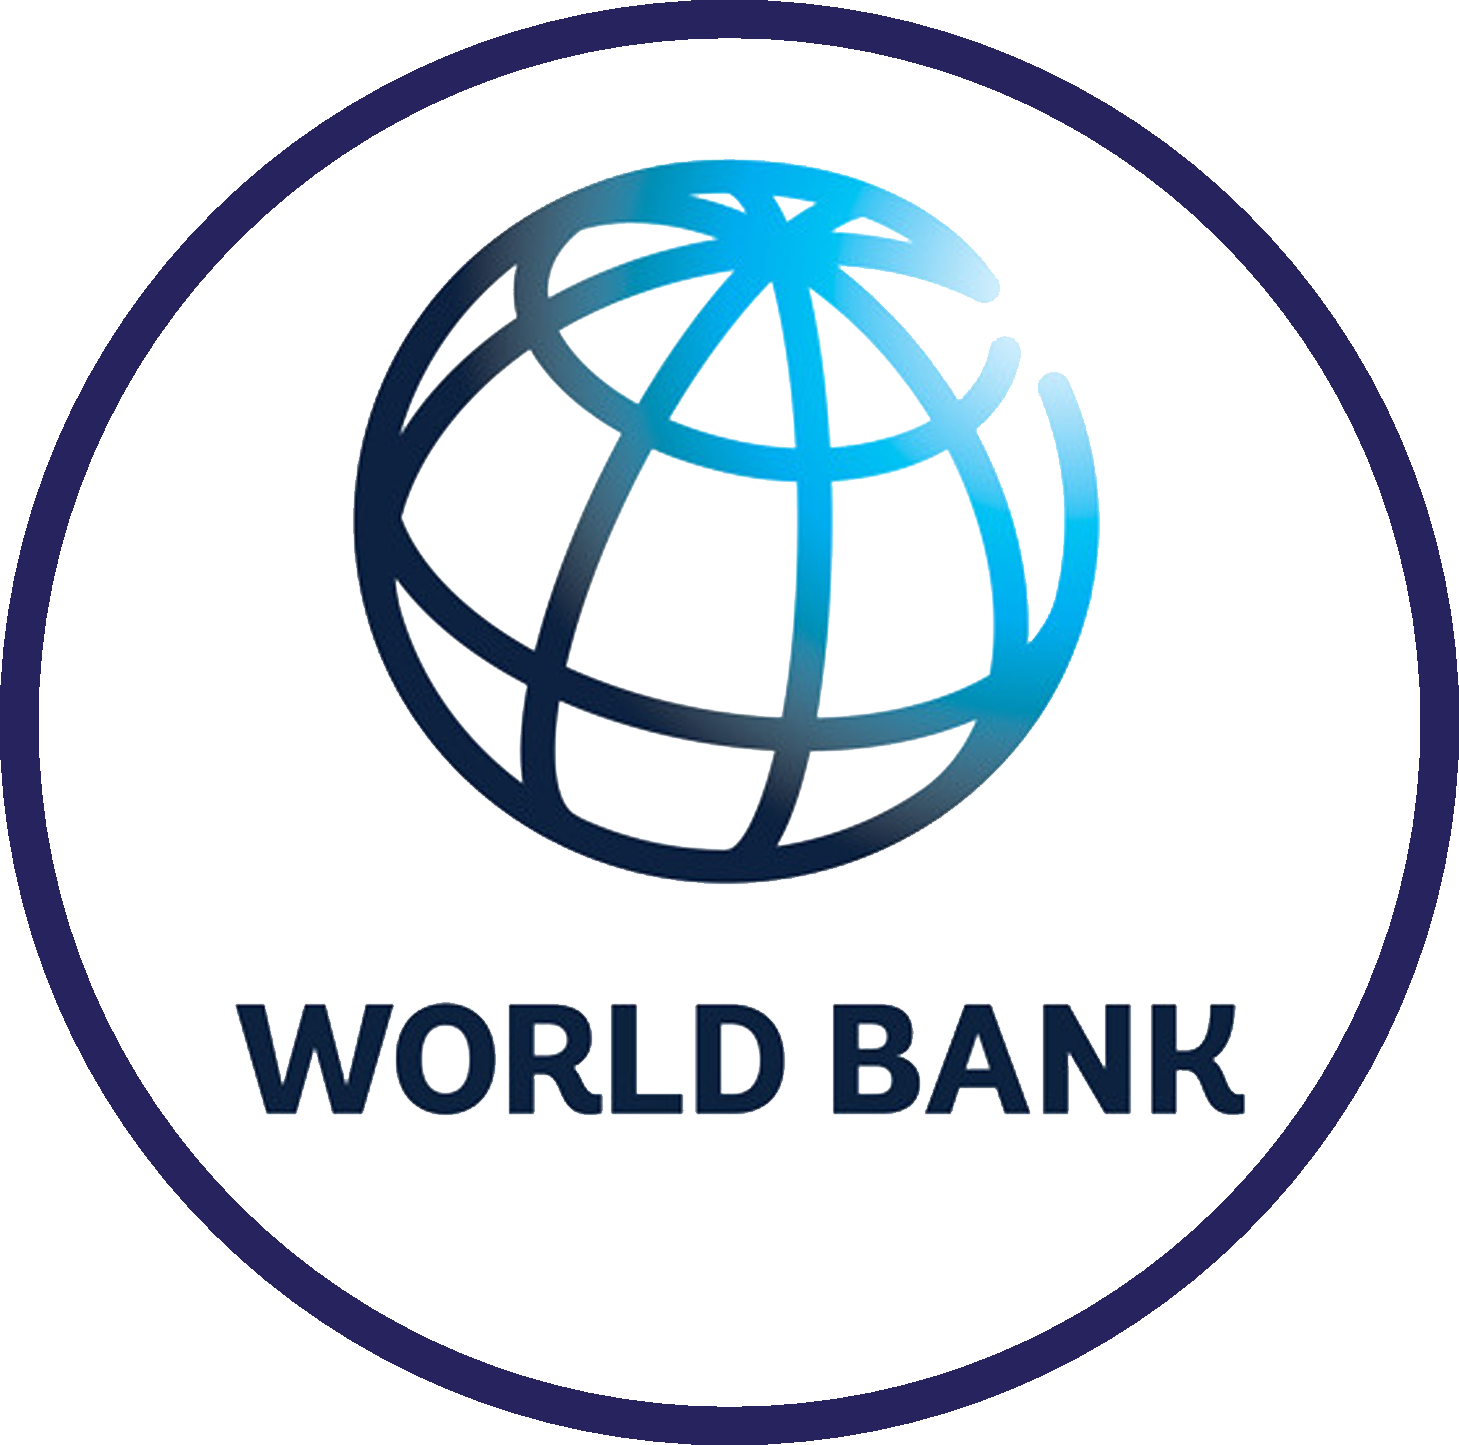 World bank is. Всемирный банк. Значок Всемирного банка. Логотип World Bank Group. Логотипы Мировых банков.